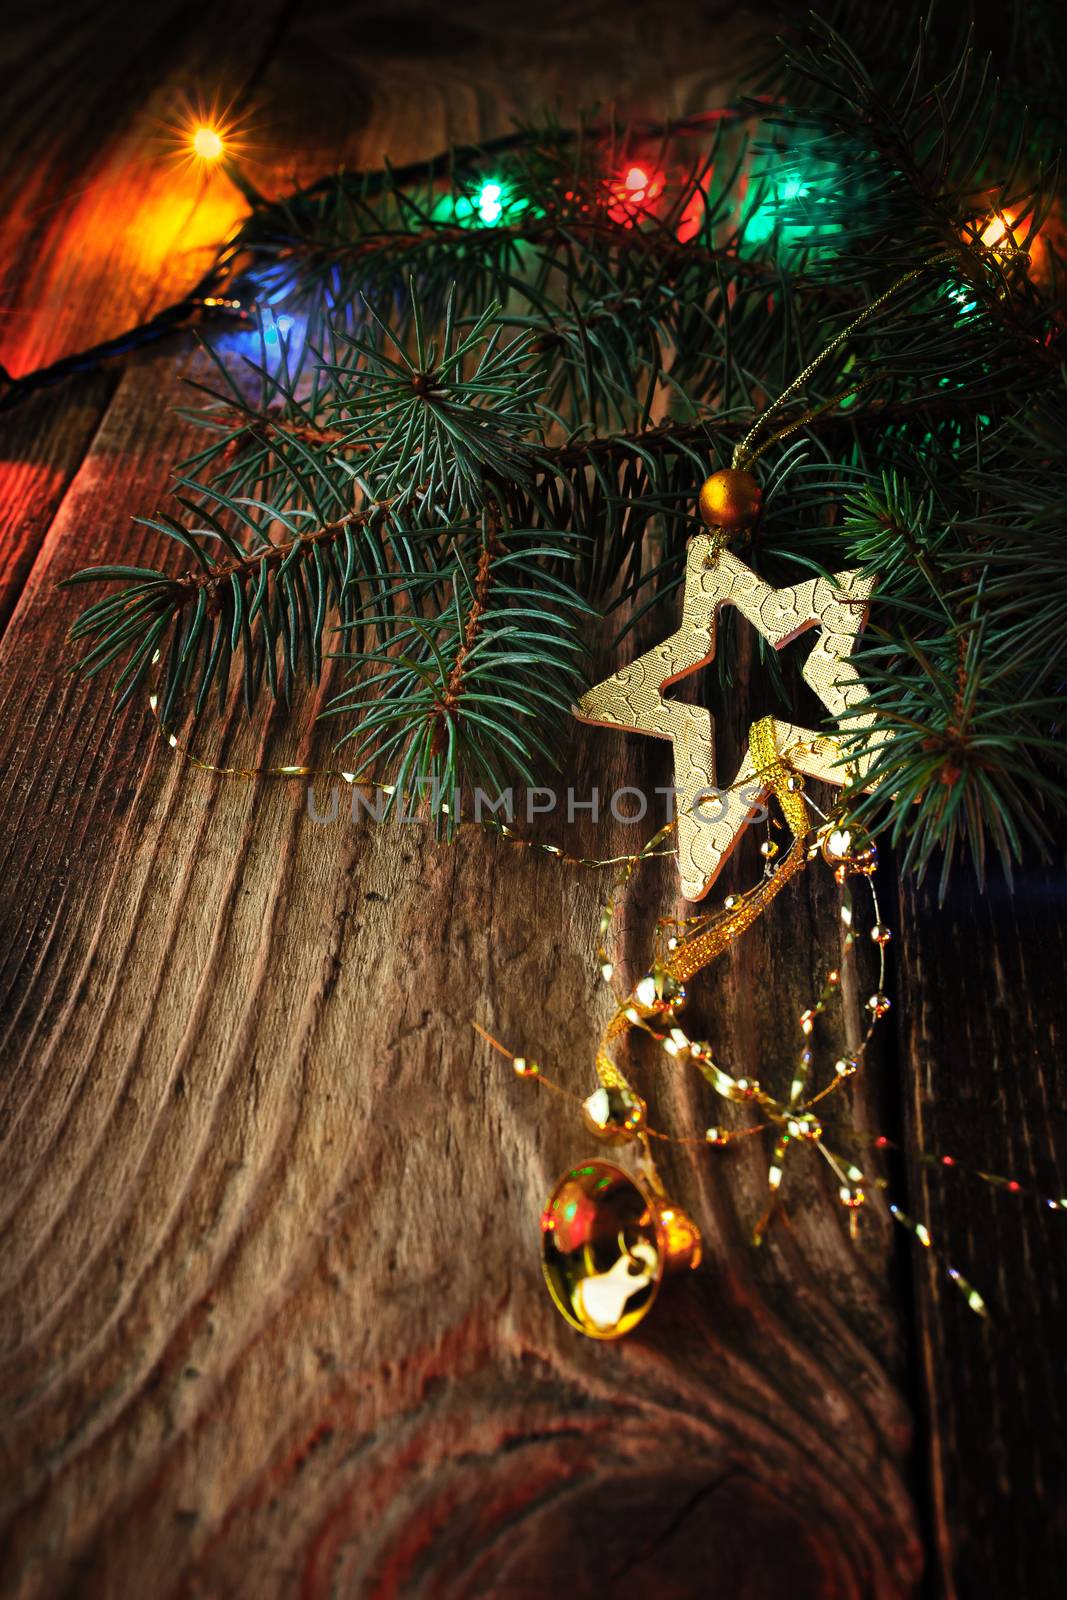 Christmas fir tree with decoration by Deniskarpenkov